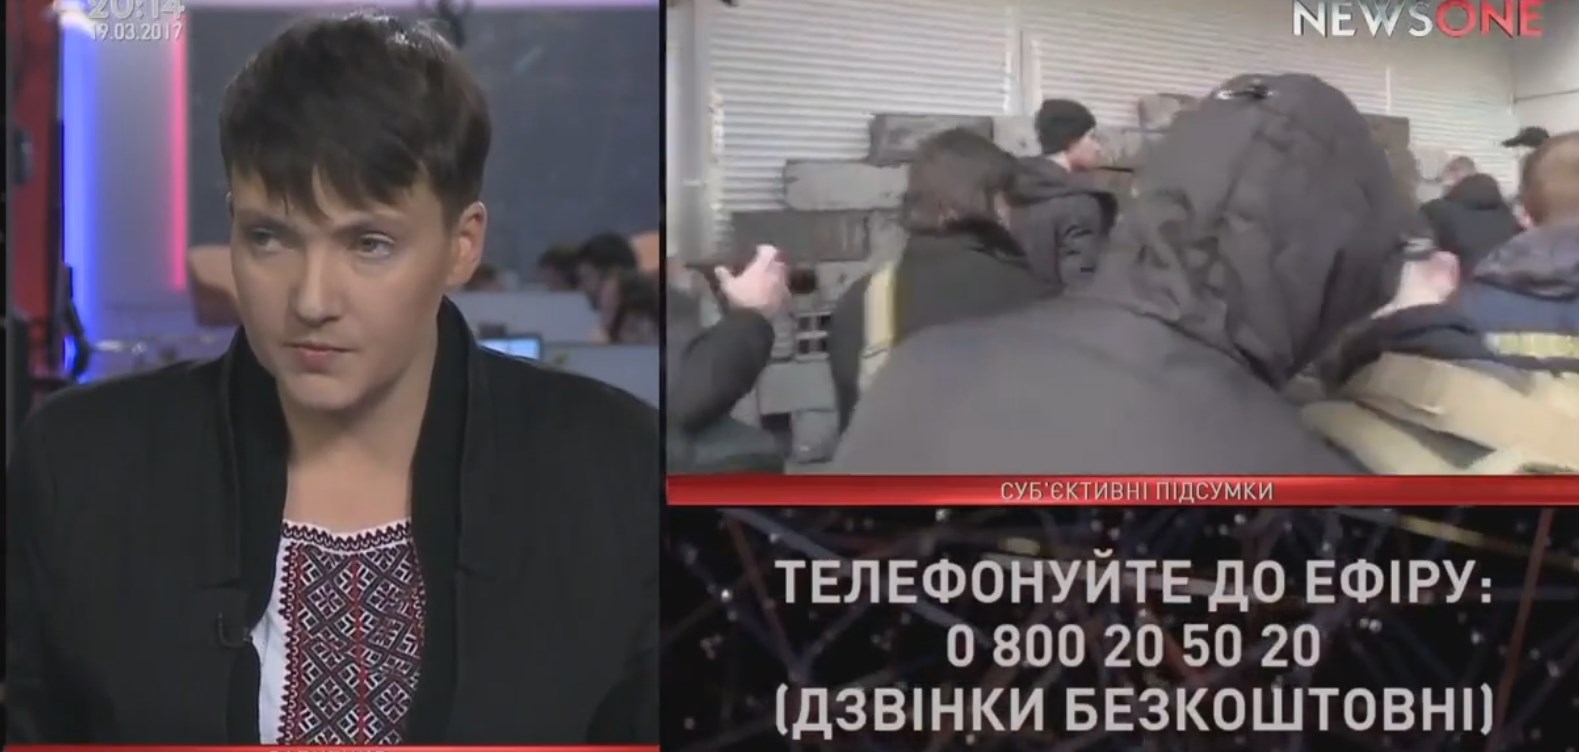 Надежда Савченко: Власть у нас имеет не украинскую кровь